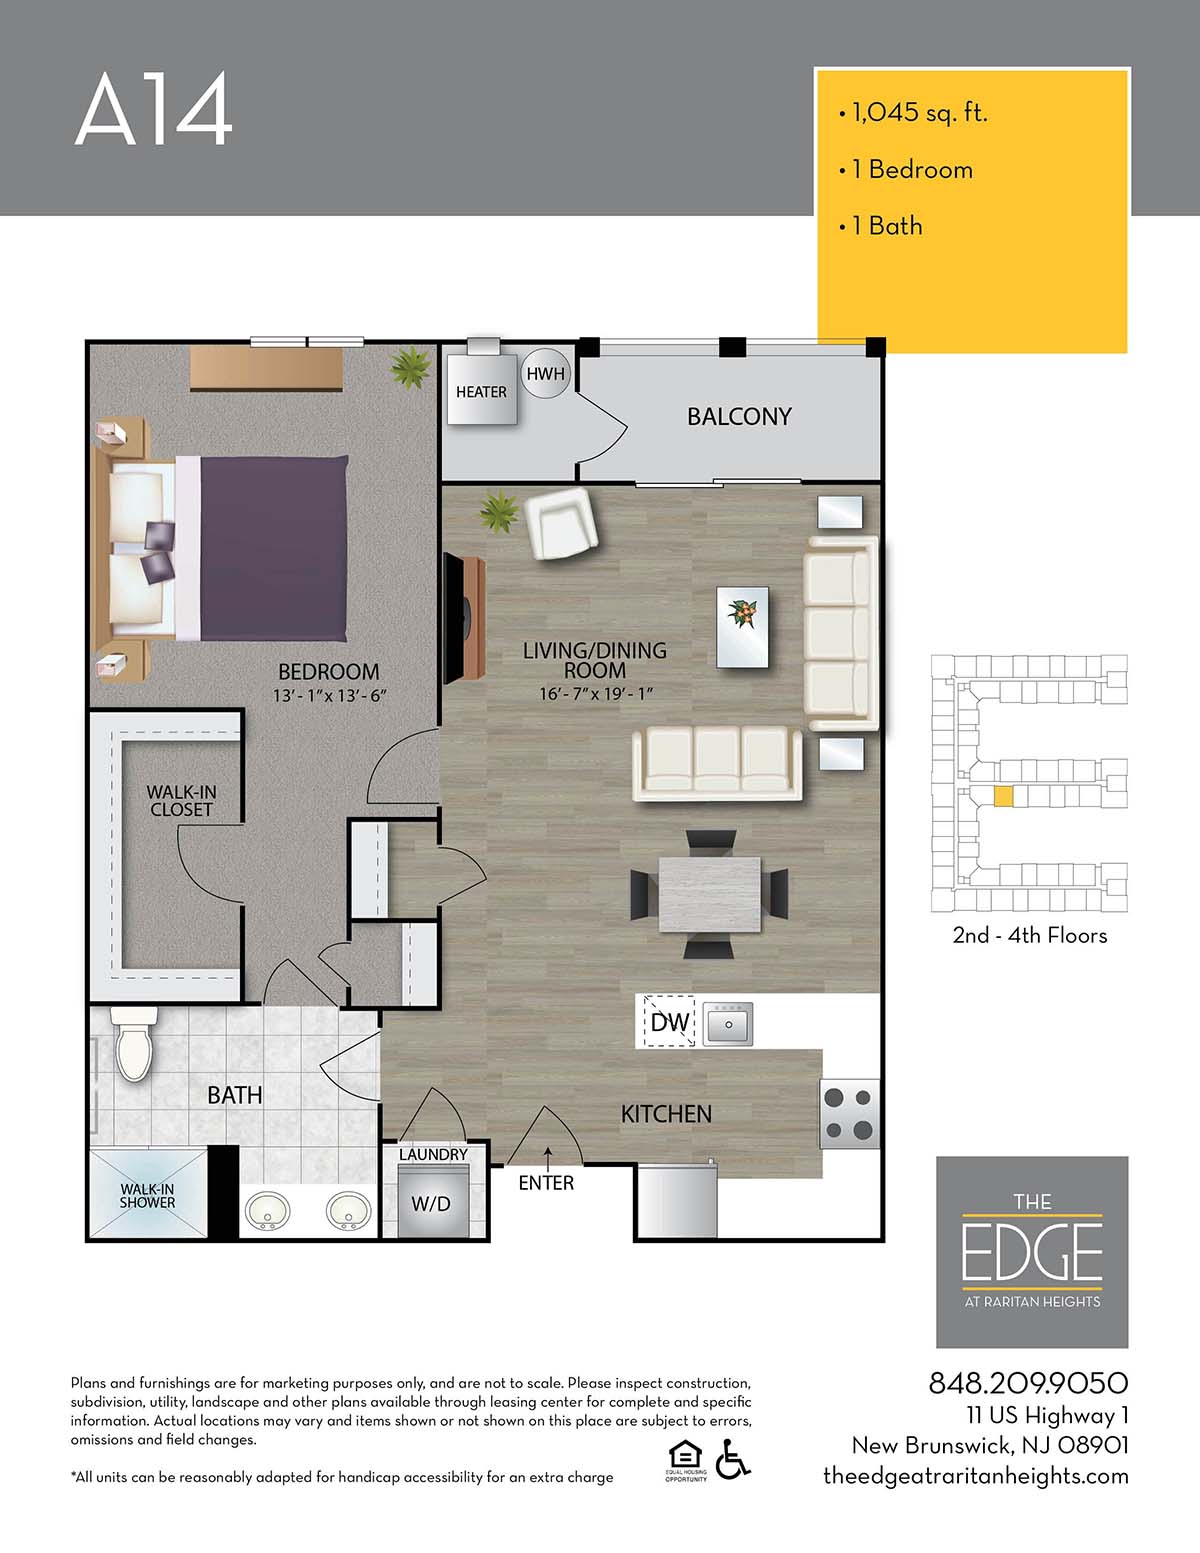 The Edge At Raritan Heights Apartment Floor Plan A14